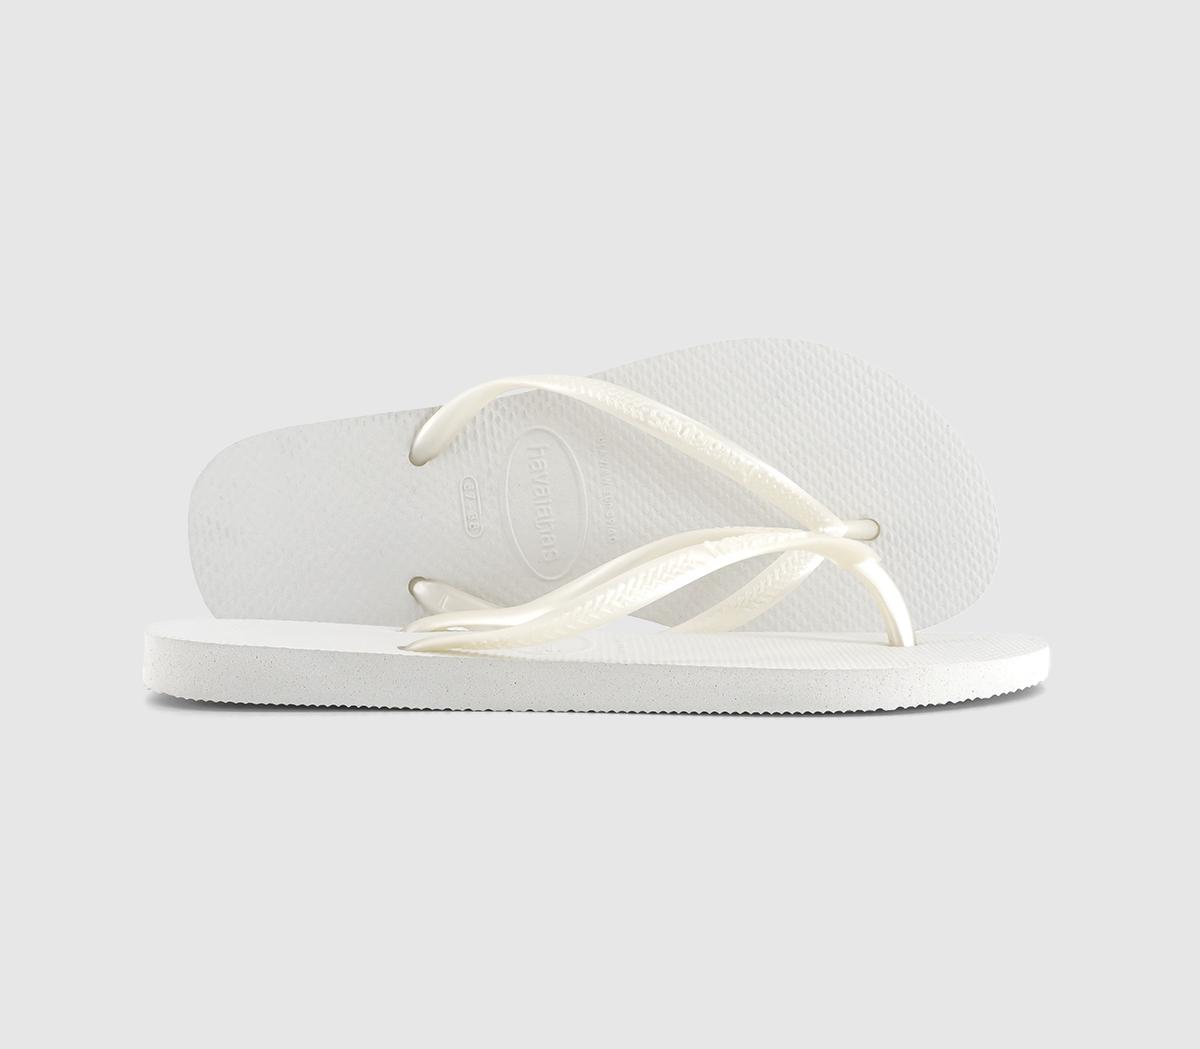 Havaianas Slim Flip Flops White - Women’s Sandals